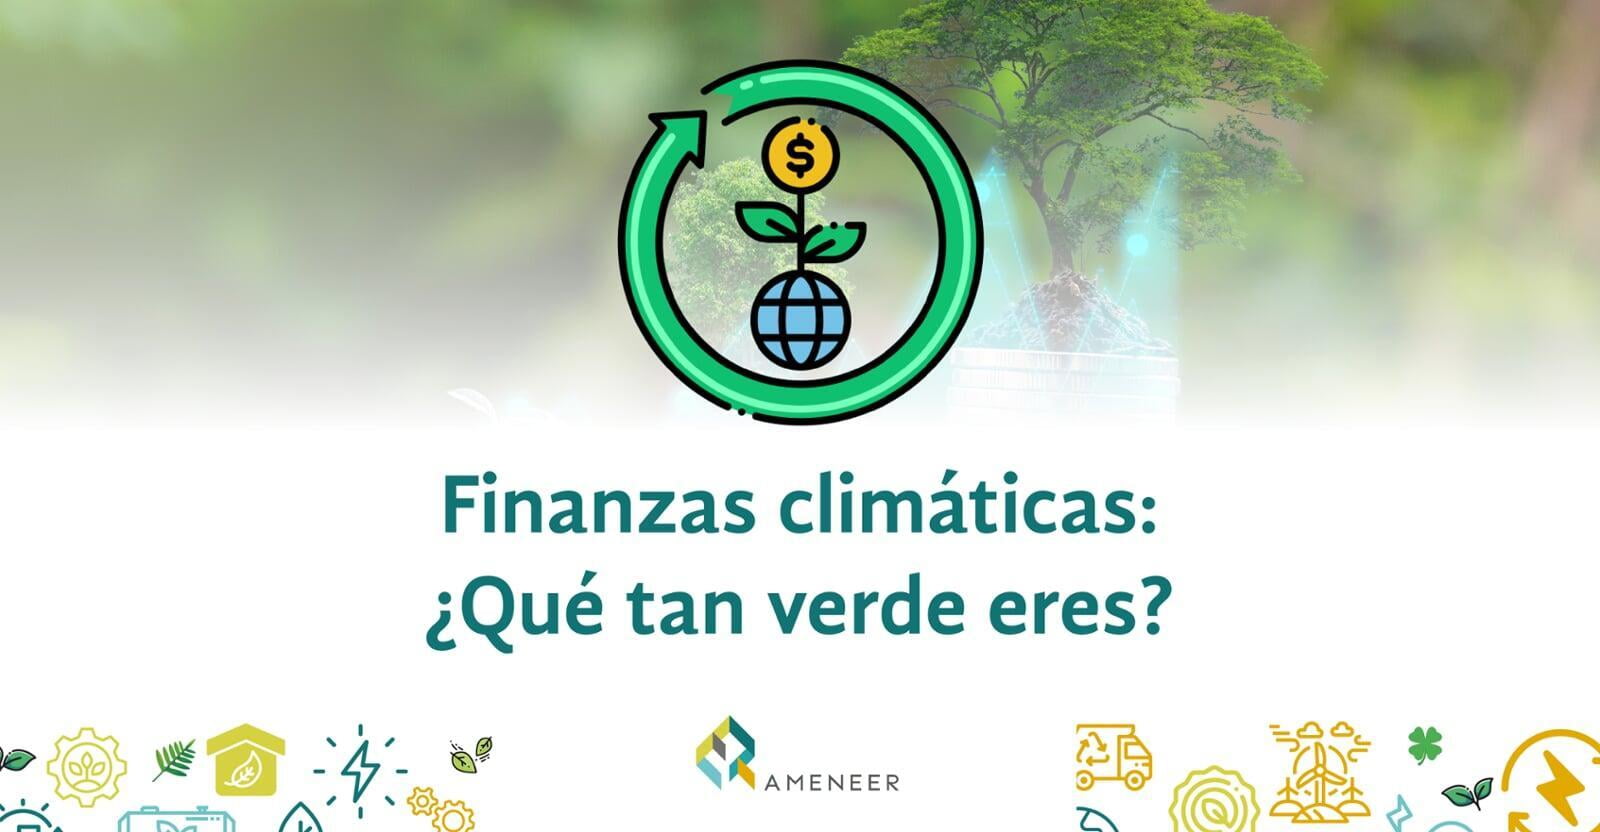 Finanzas climáticas: How green are you?